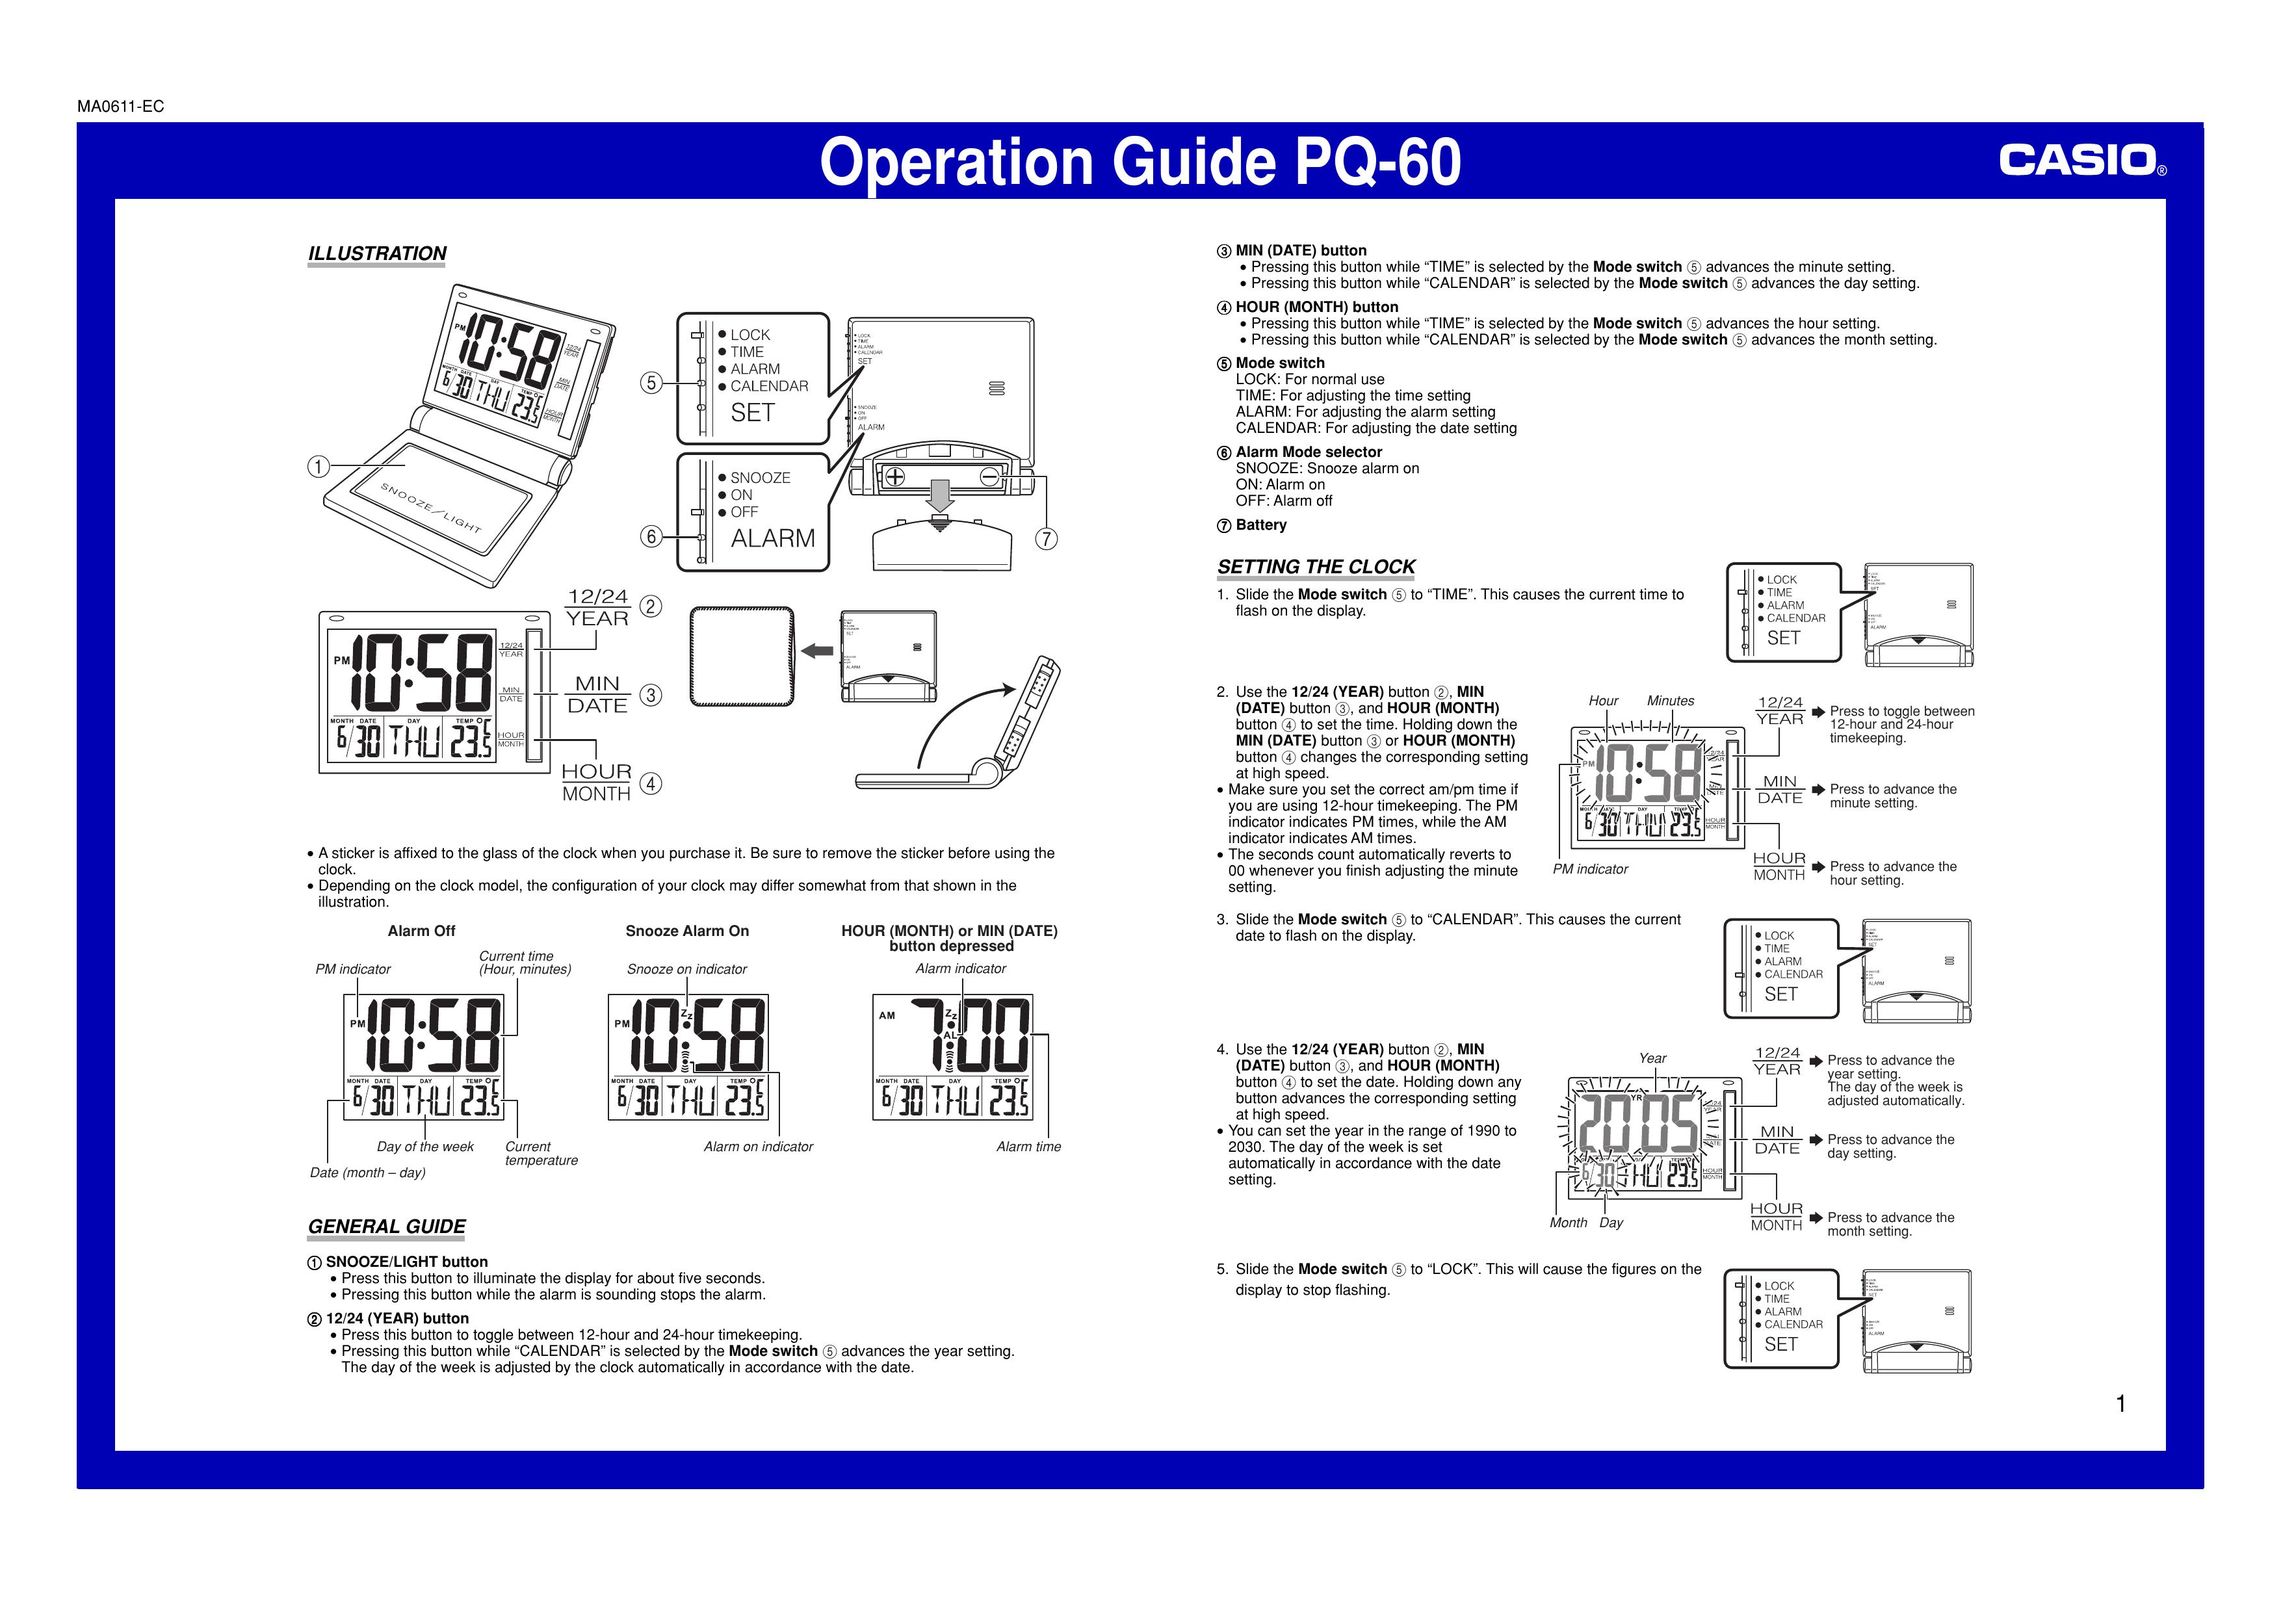 Casio MA0611-EC Clock User Manual